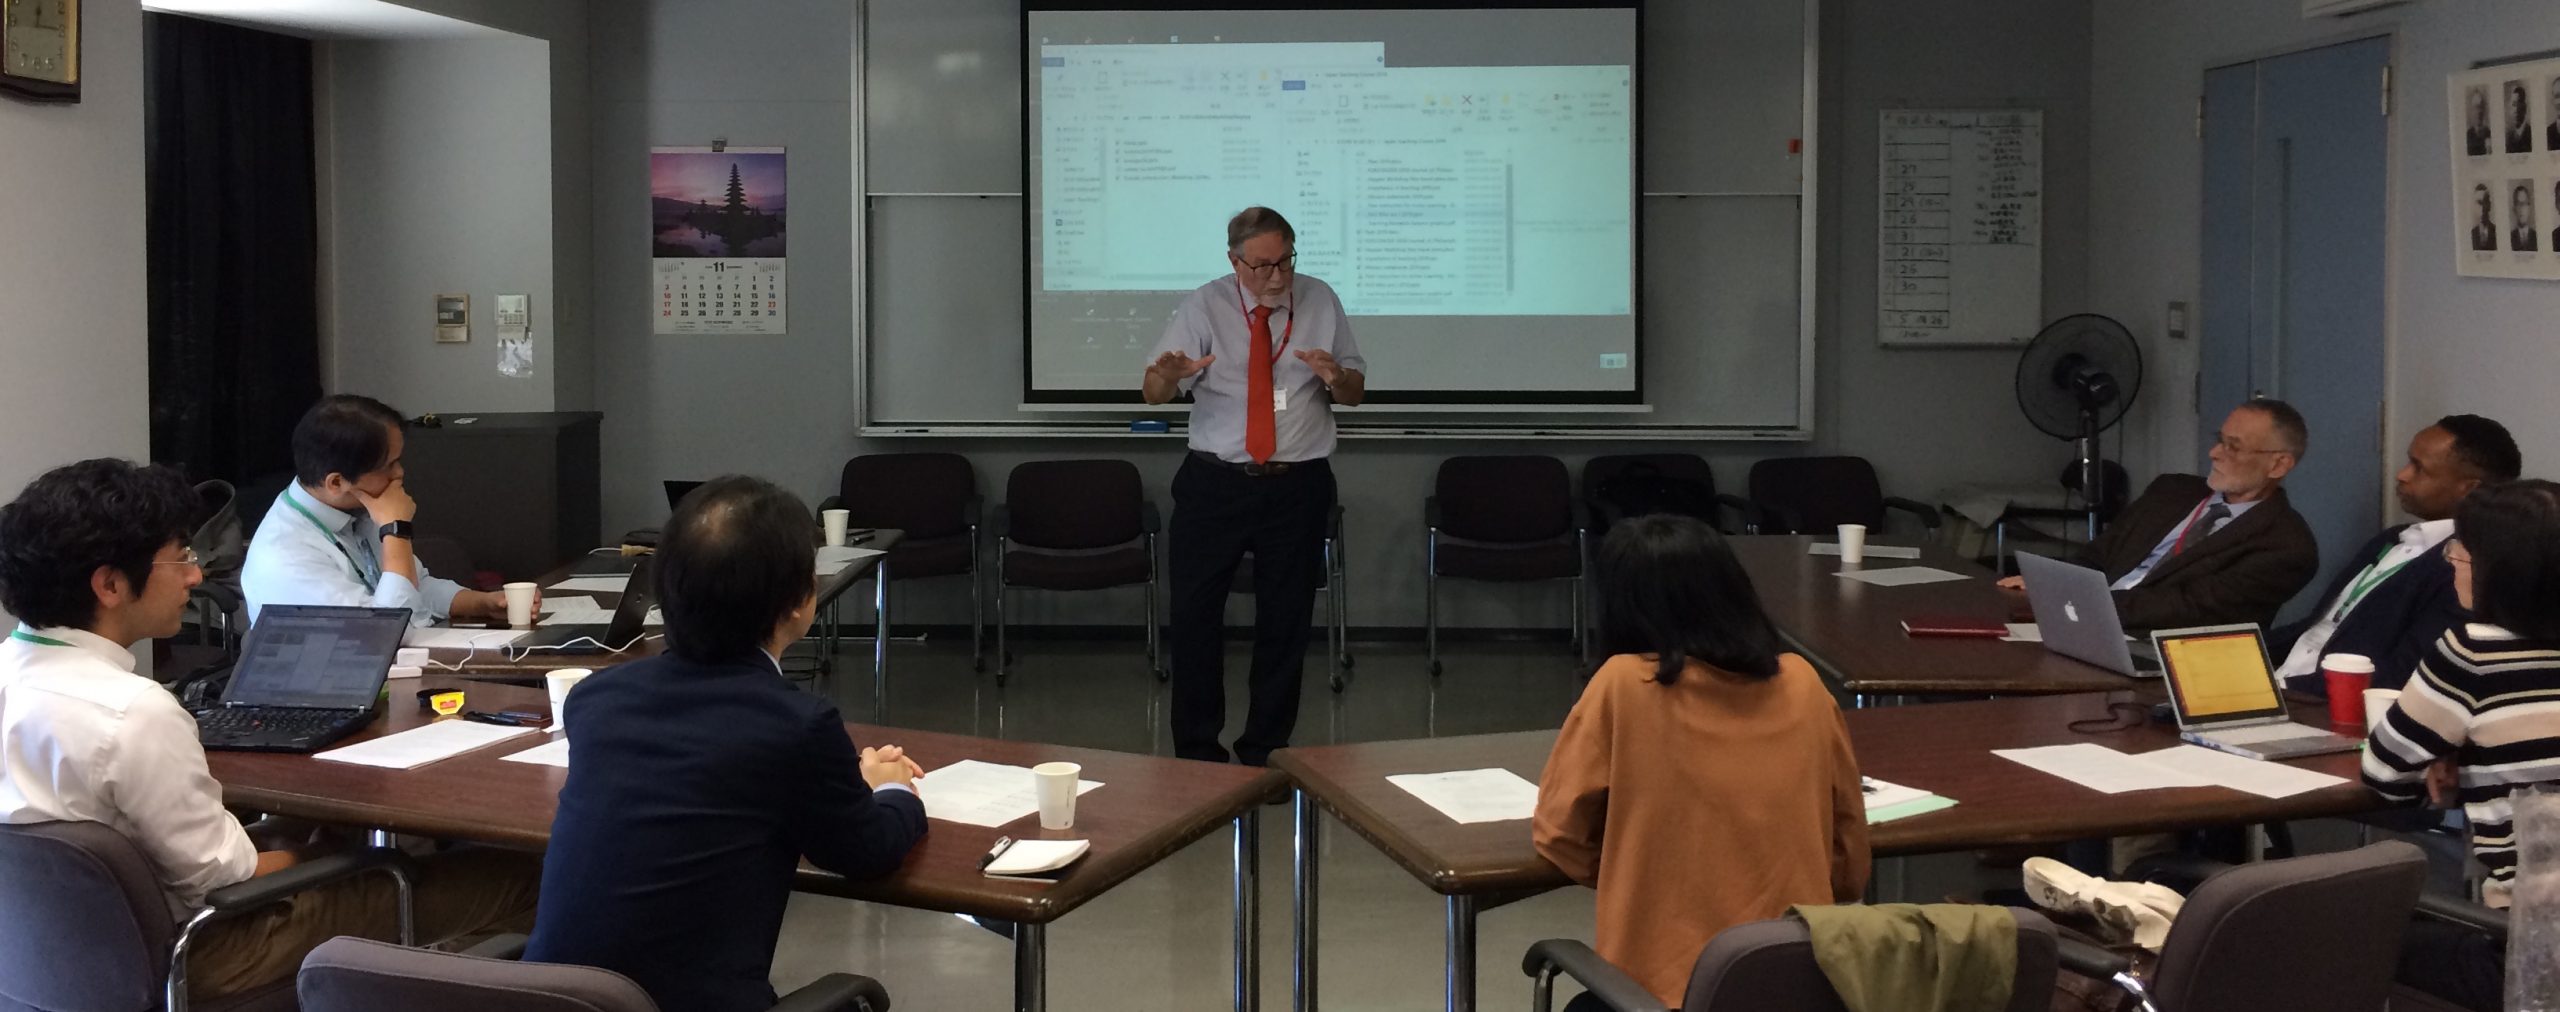 Innovative Teaching Workshop at Nagoya University